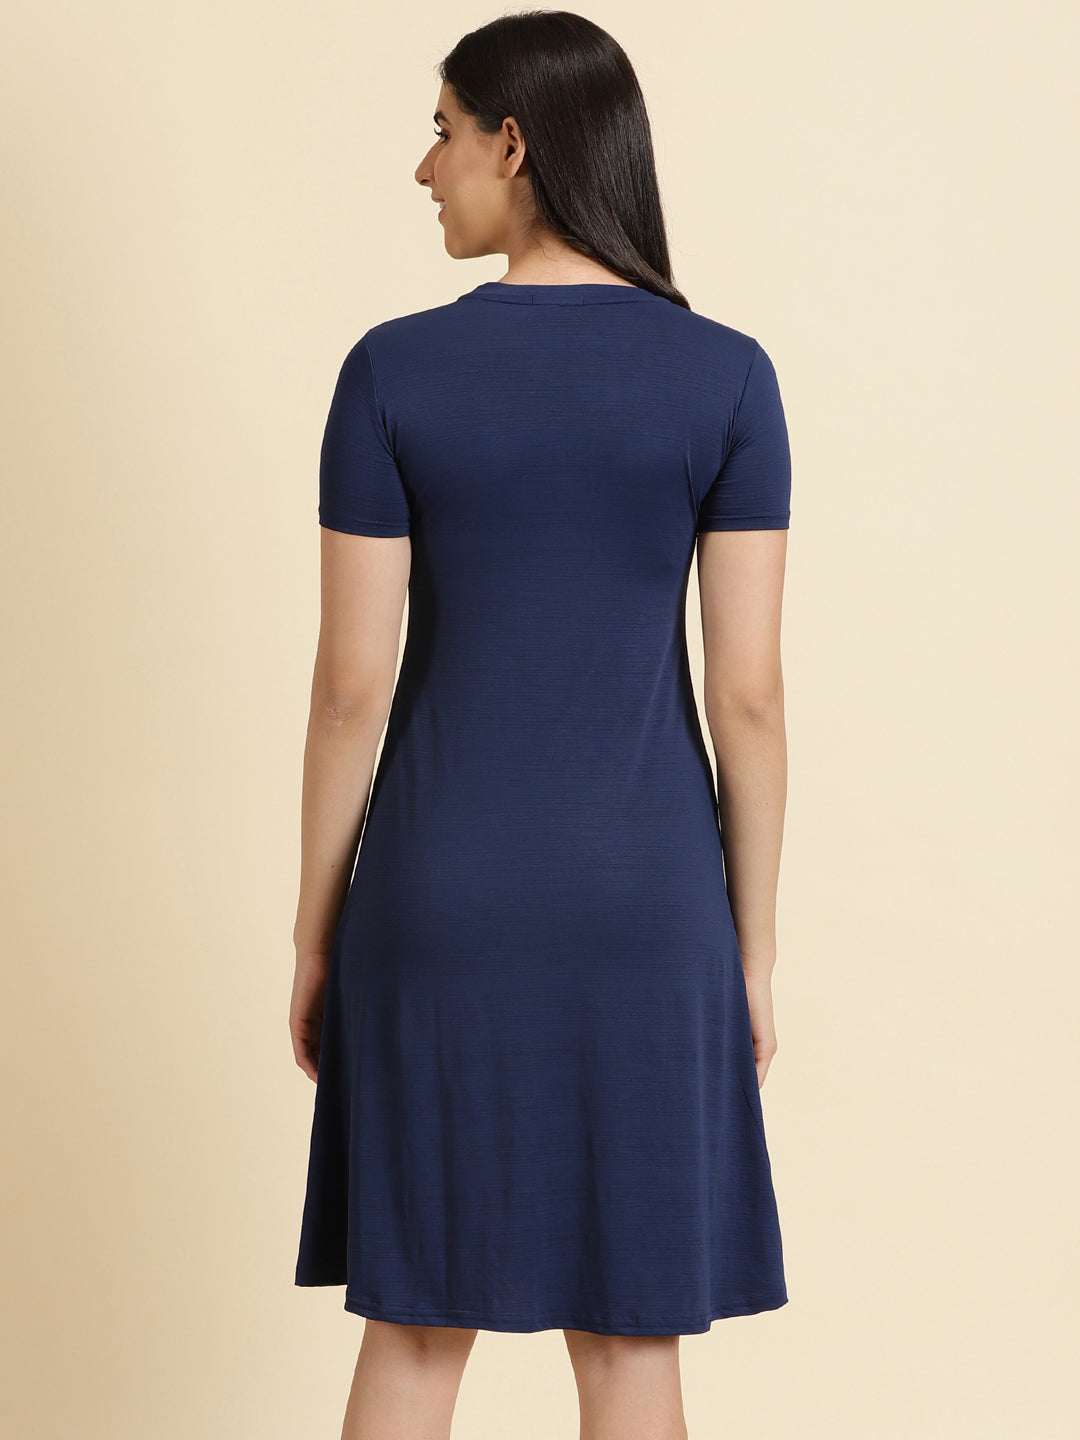 Women's Navy Blue Solid A-Line Dress